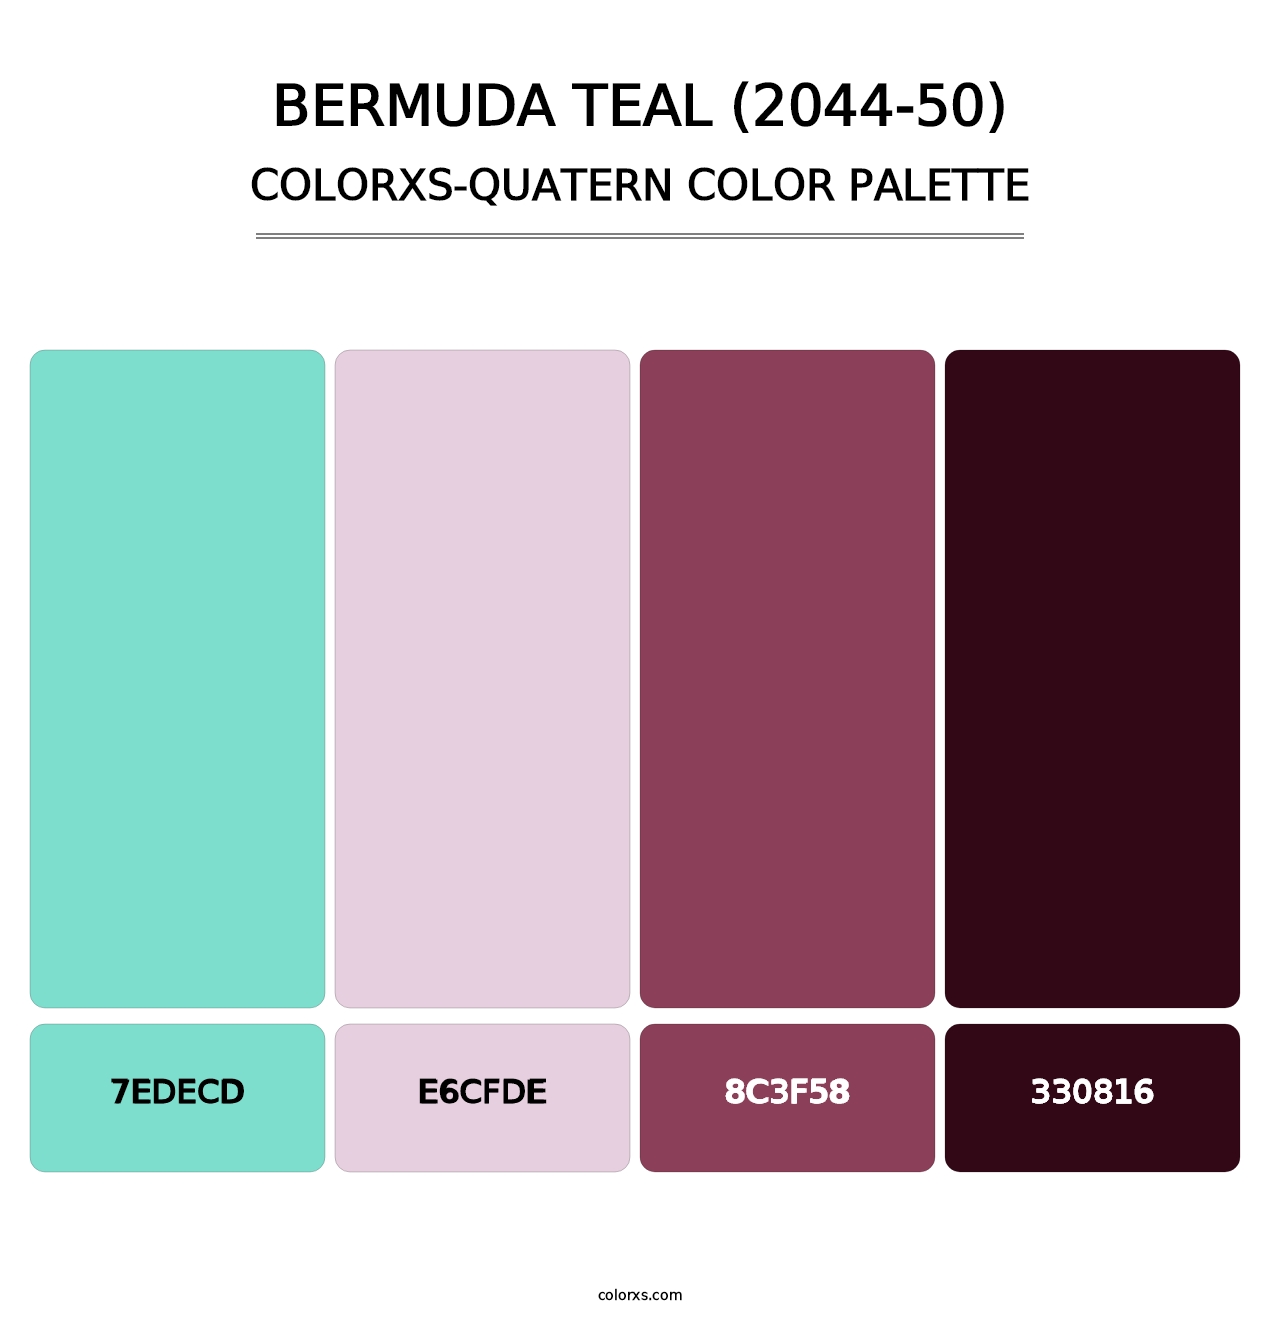 Bermuda Teal (2044-50) - Colorxs Quatern Palette